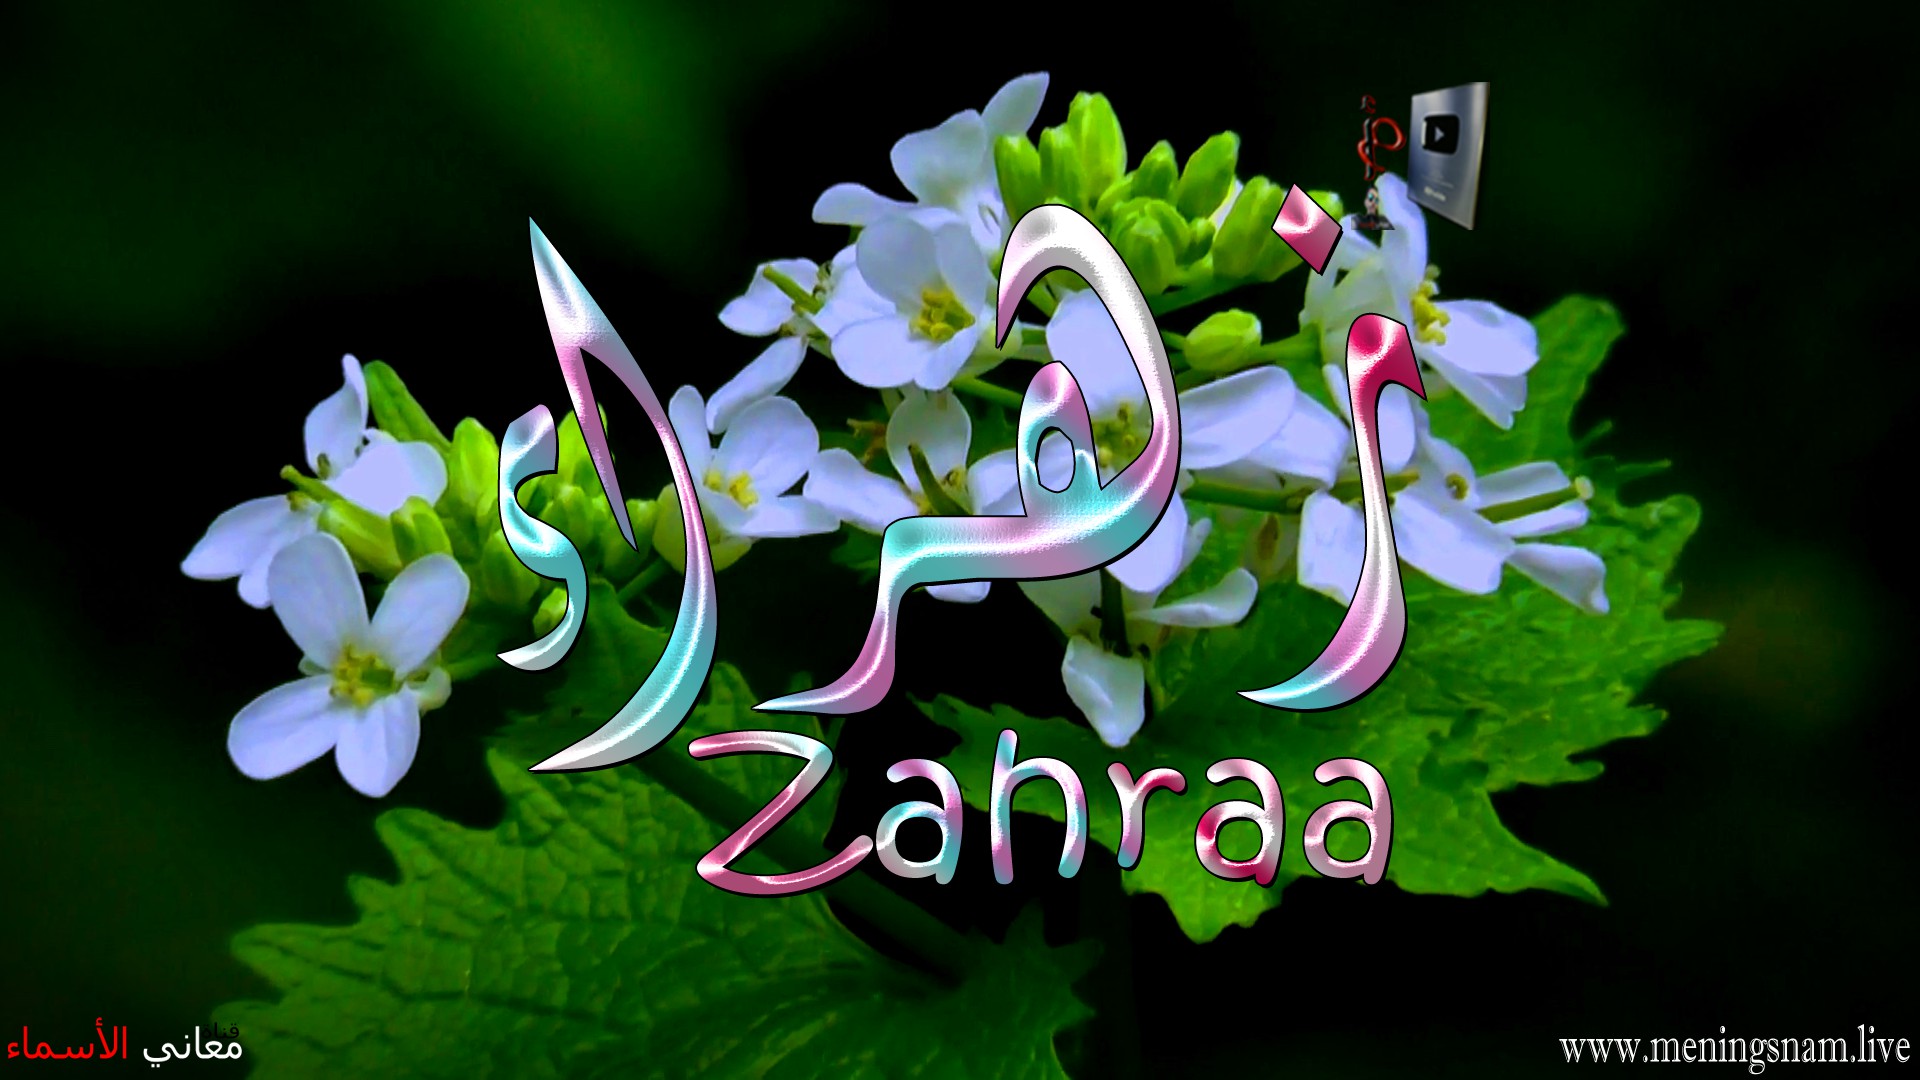 معنى اسم, زهراء, وصفات, حاملة, هذا الاسم, Zahraa,